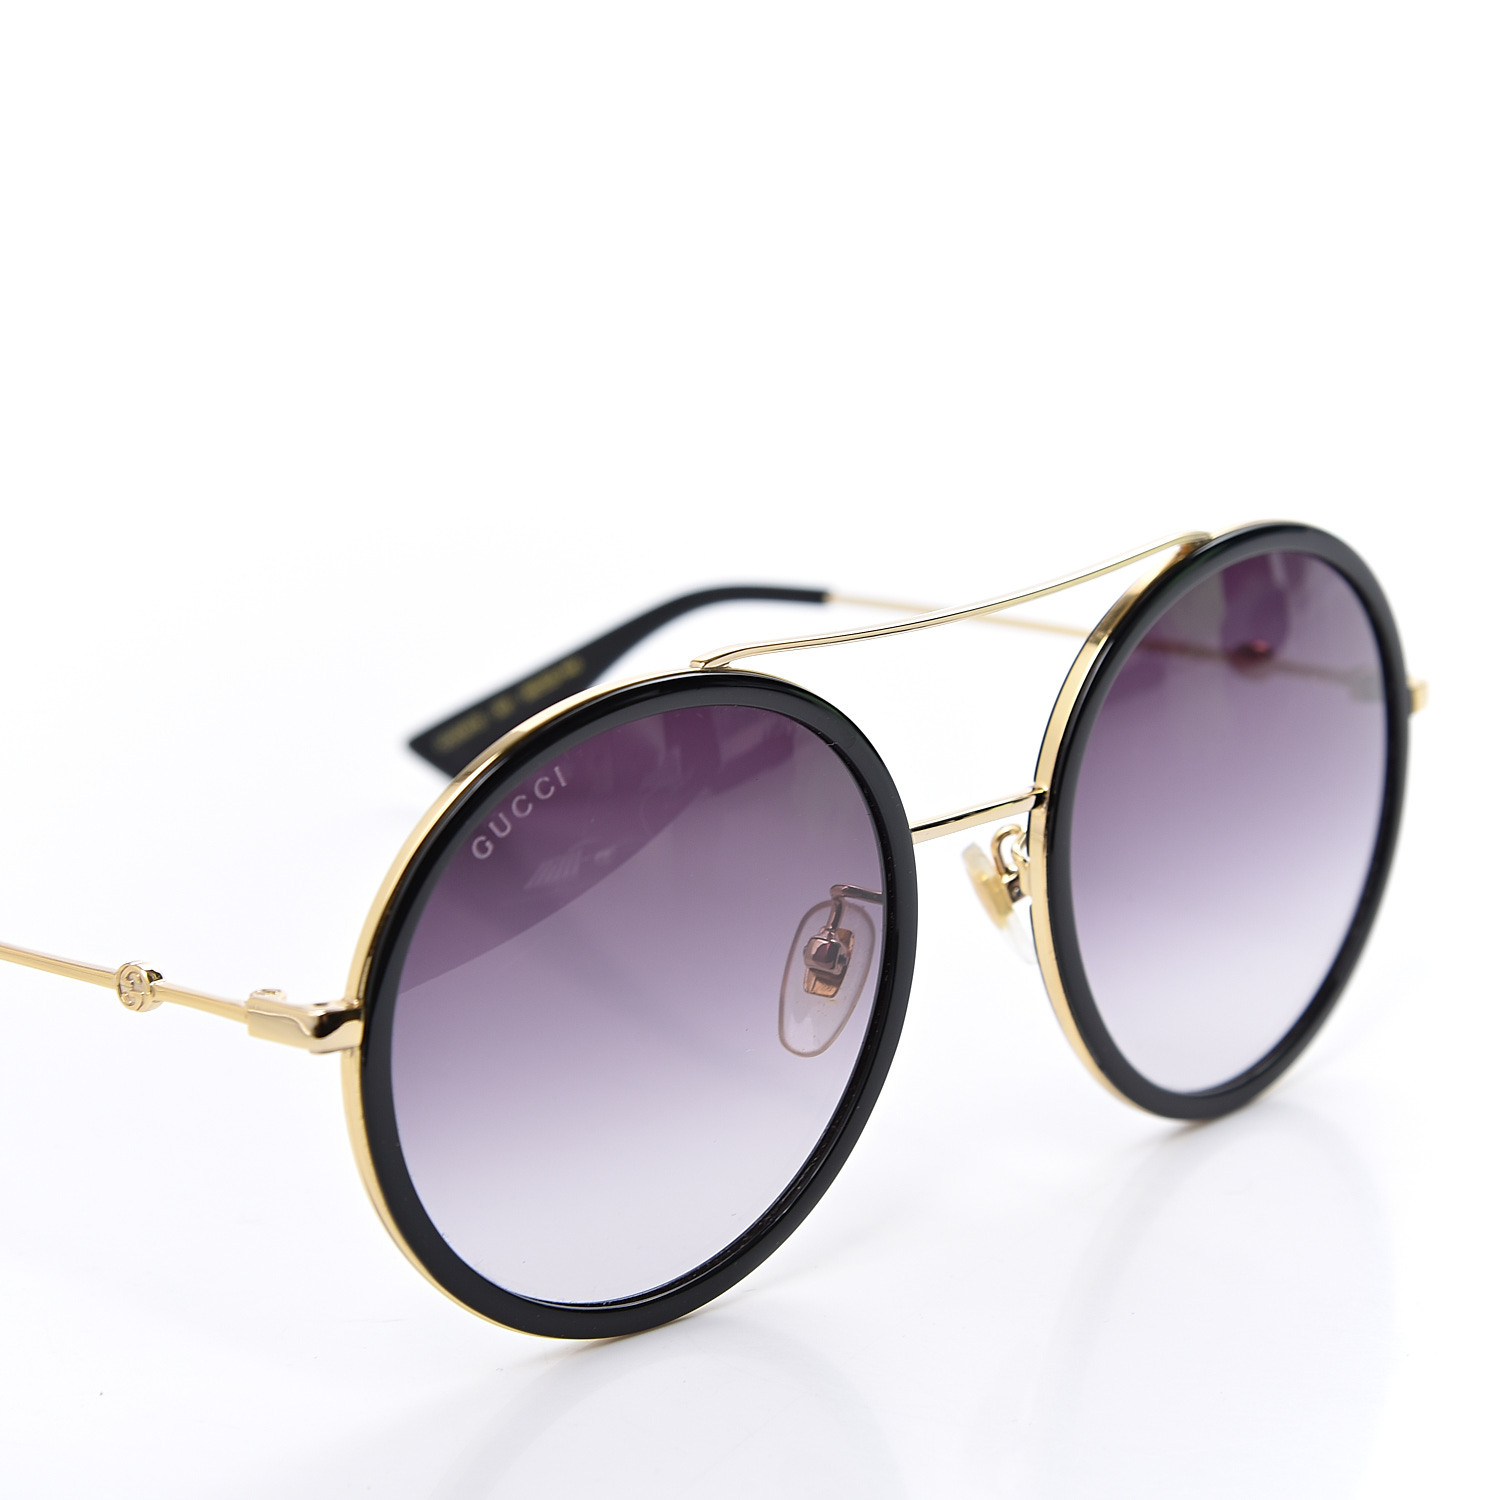 Gucci Round Frame Sunglasses Gg0061s Black 559390 Fashionphile